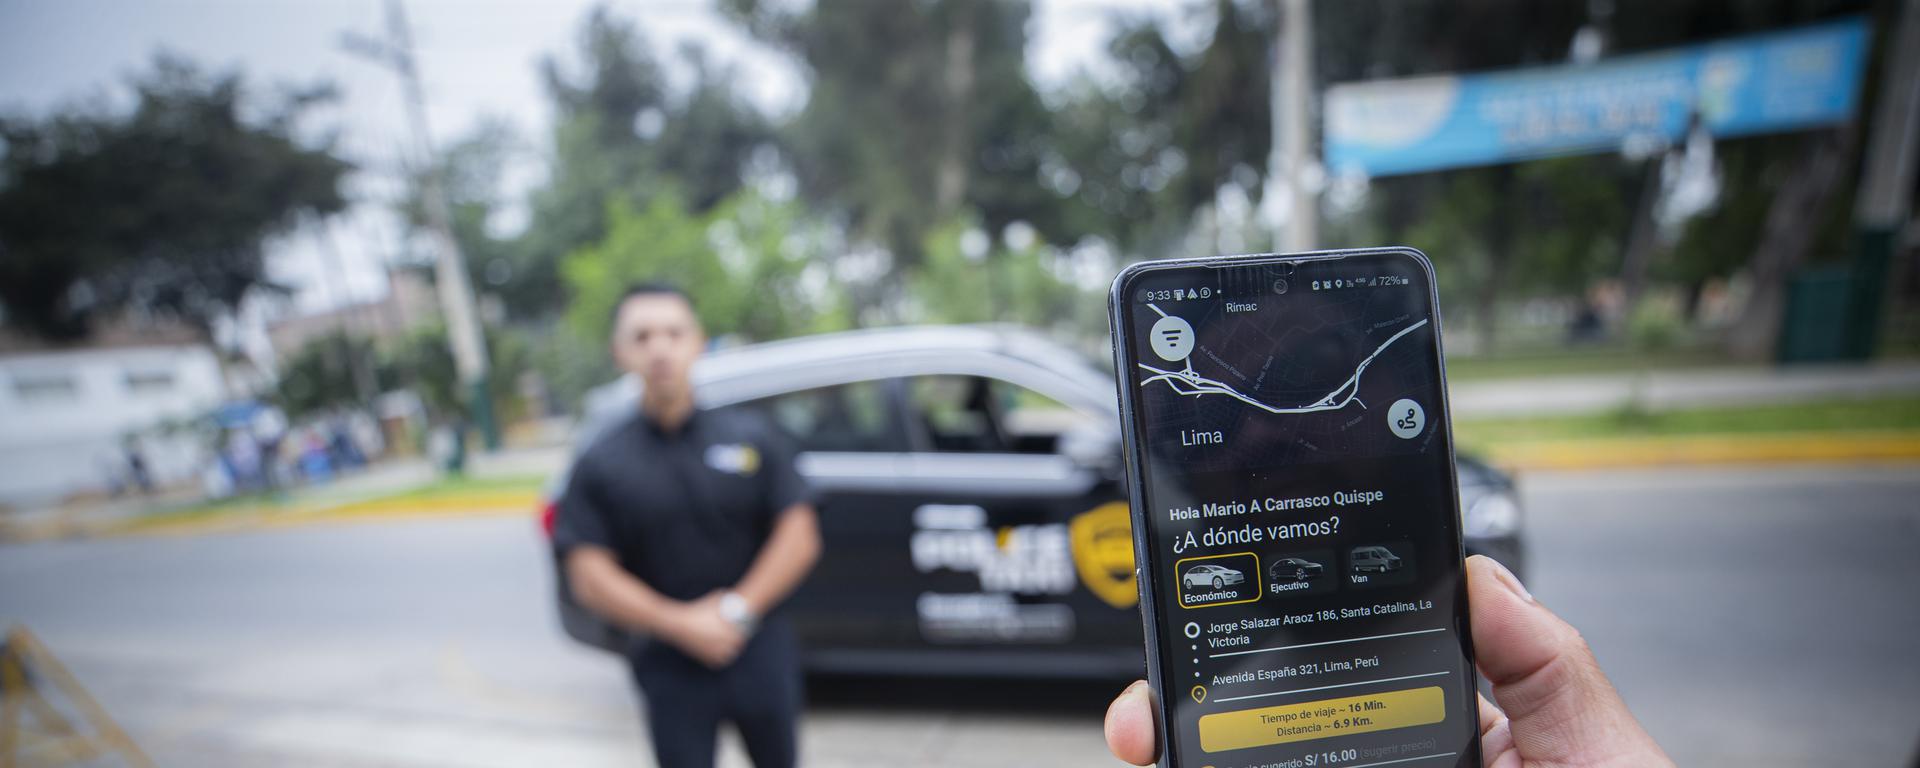 Apps de taxis con choferes militares y policías: nueva tendencia en Lima bajo análisis